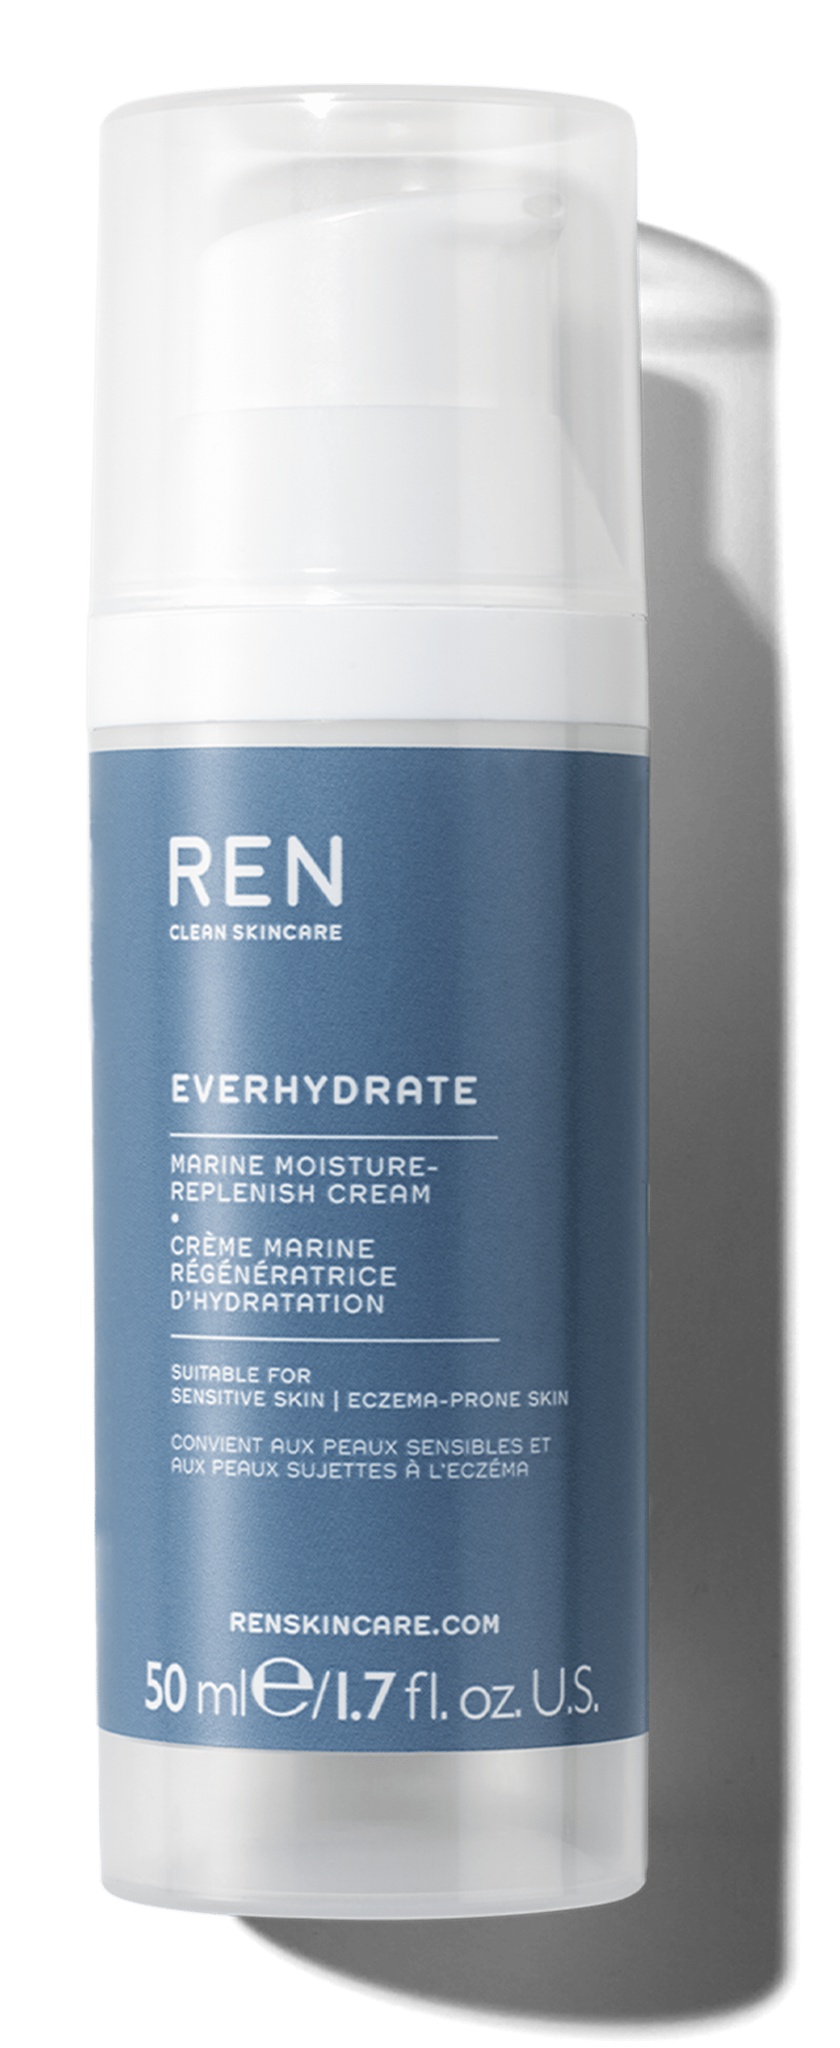 REN Everhydrate Marine Moisture-replenish Cream